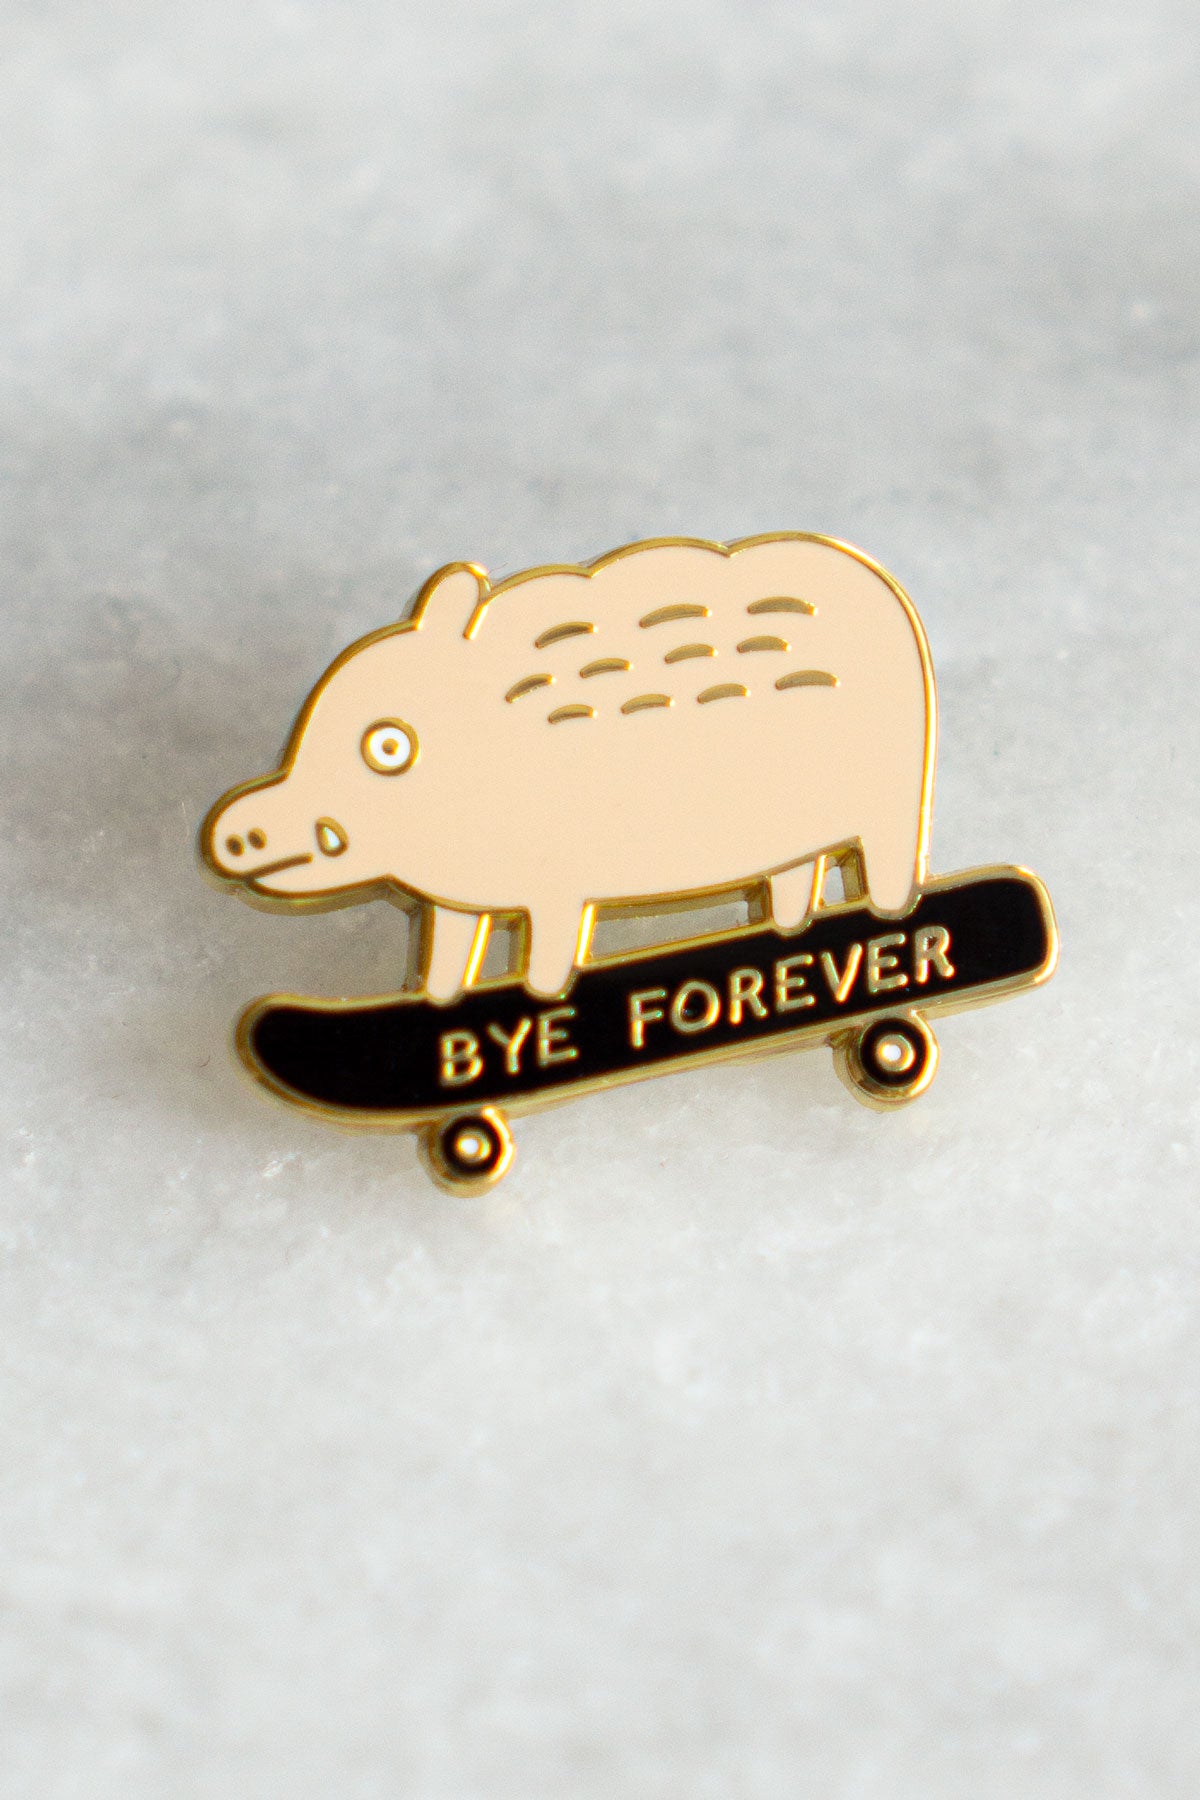 Bye Forever (Boar) Pin